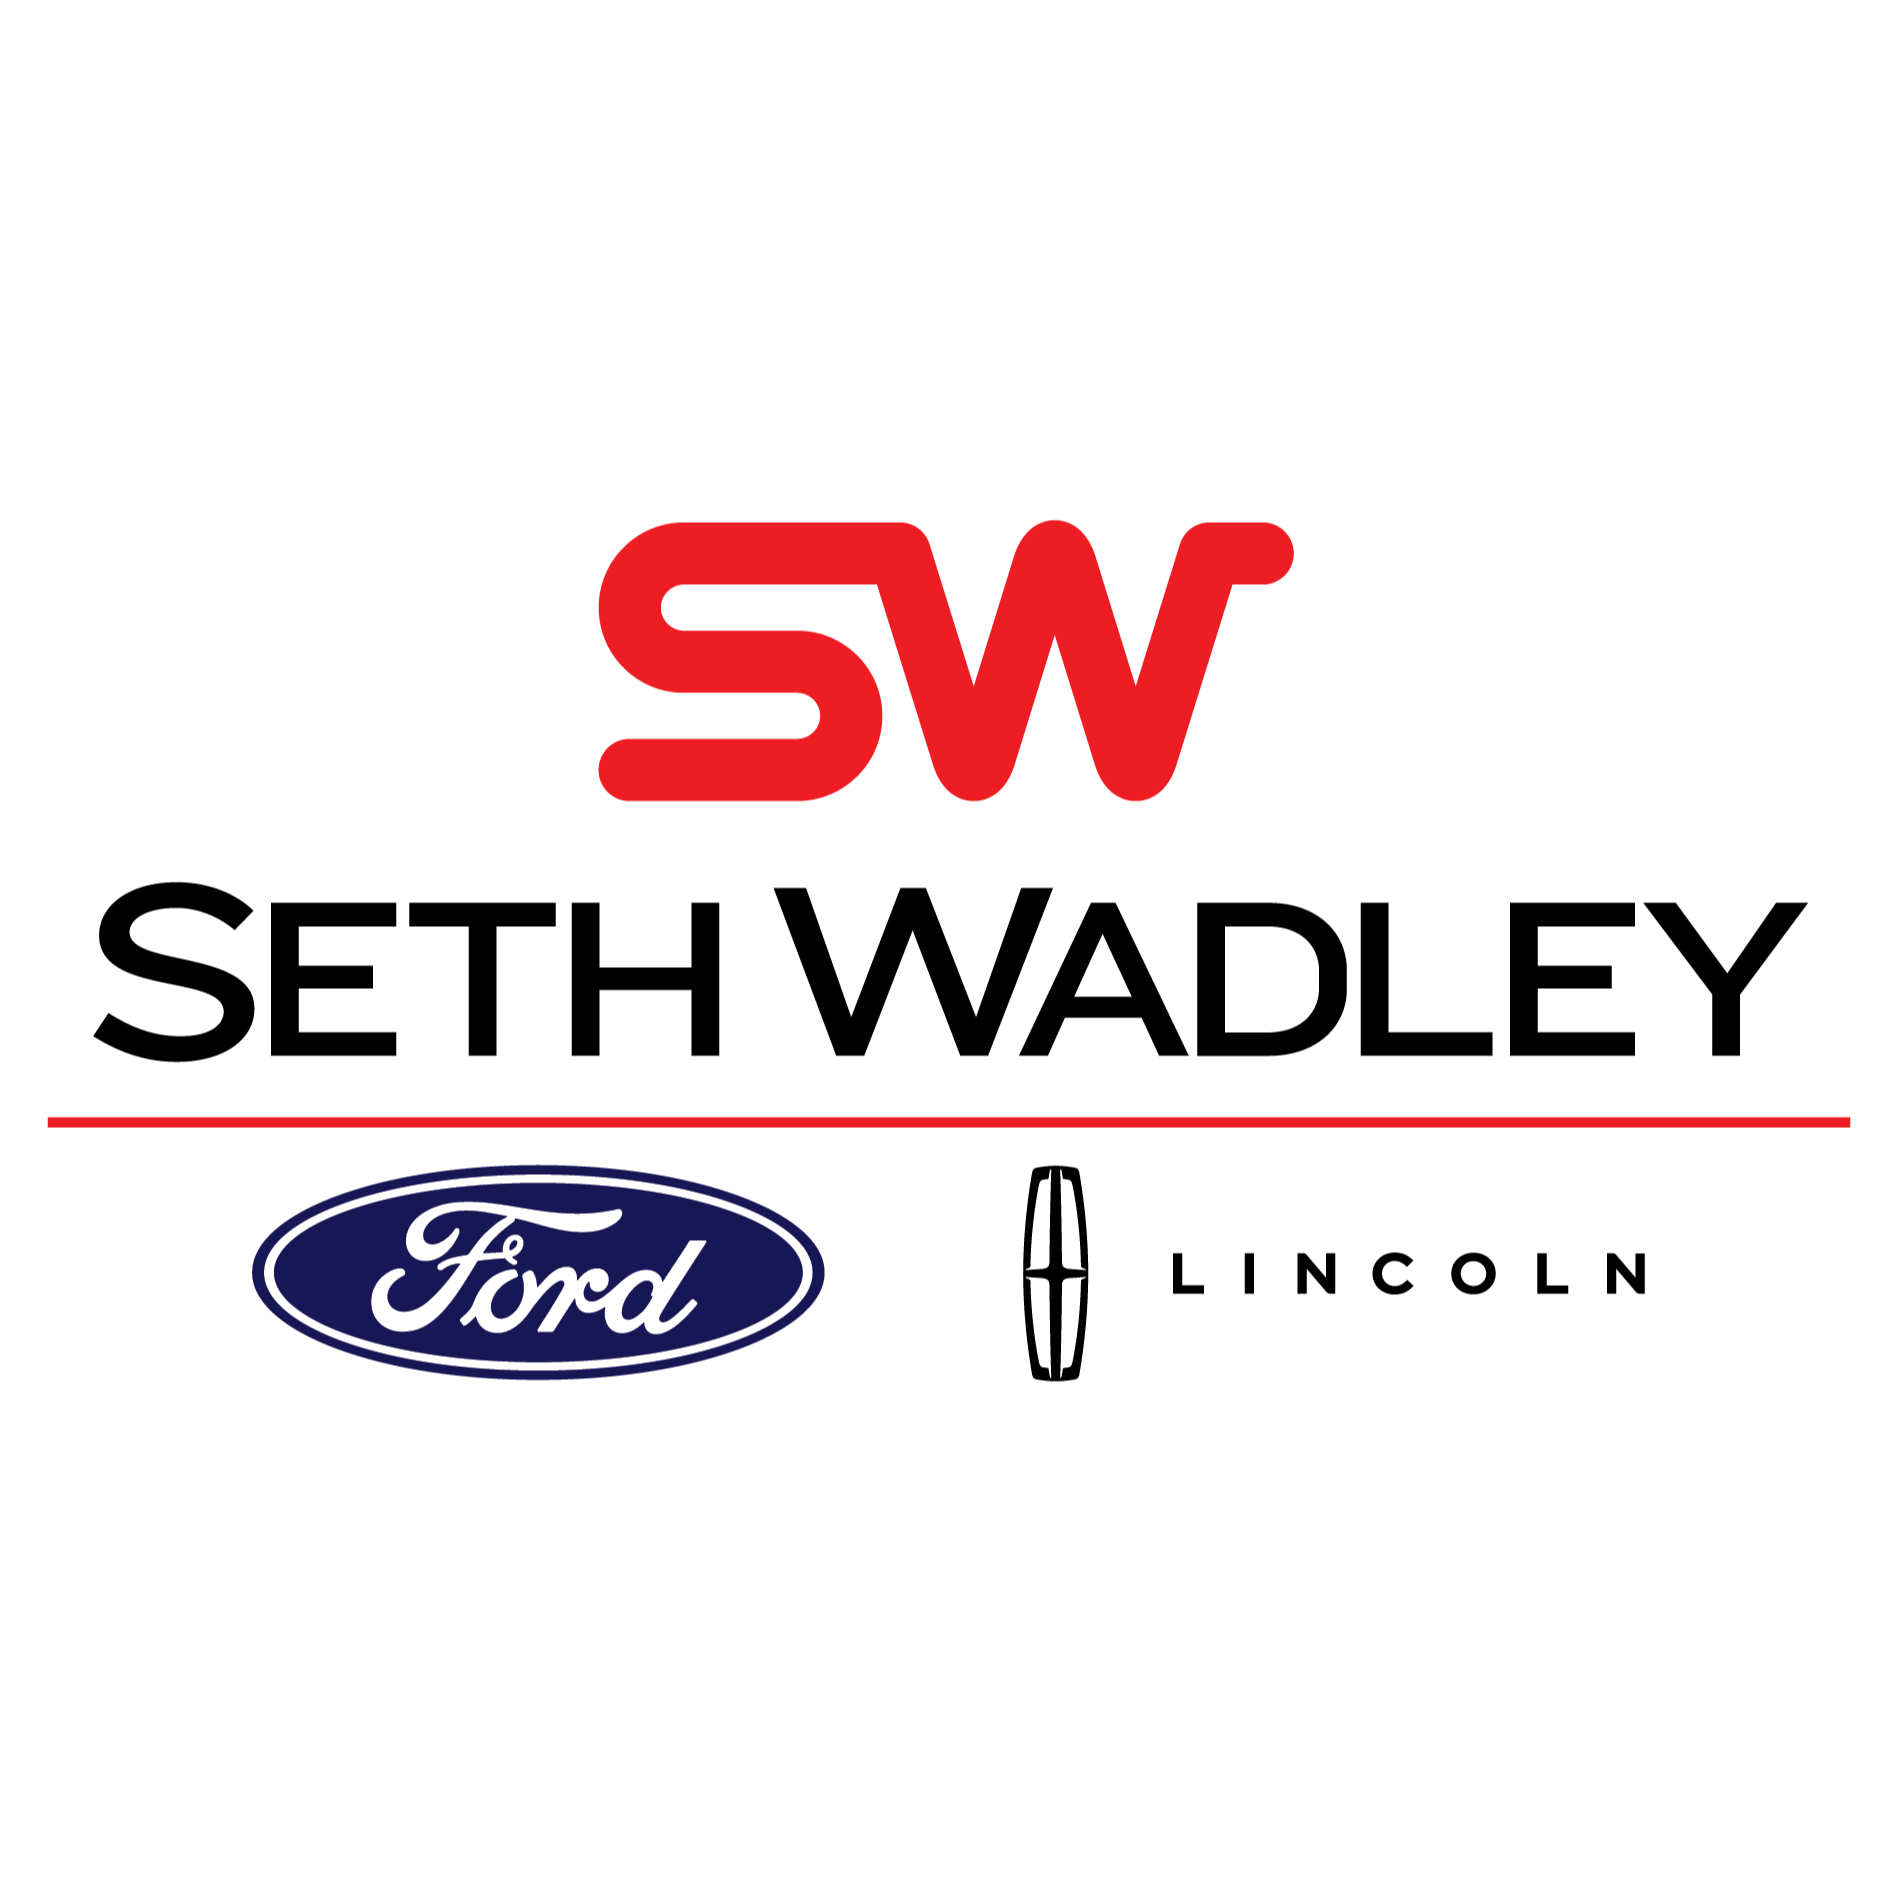 Seth Wadley Ford Lincoln